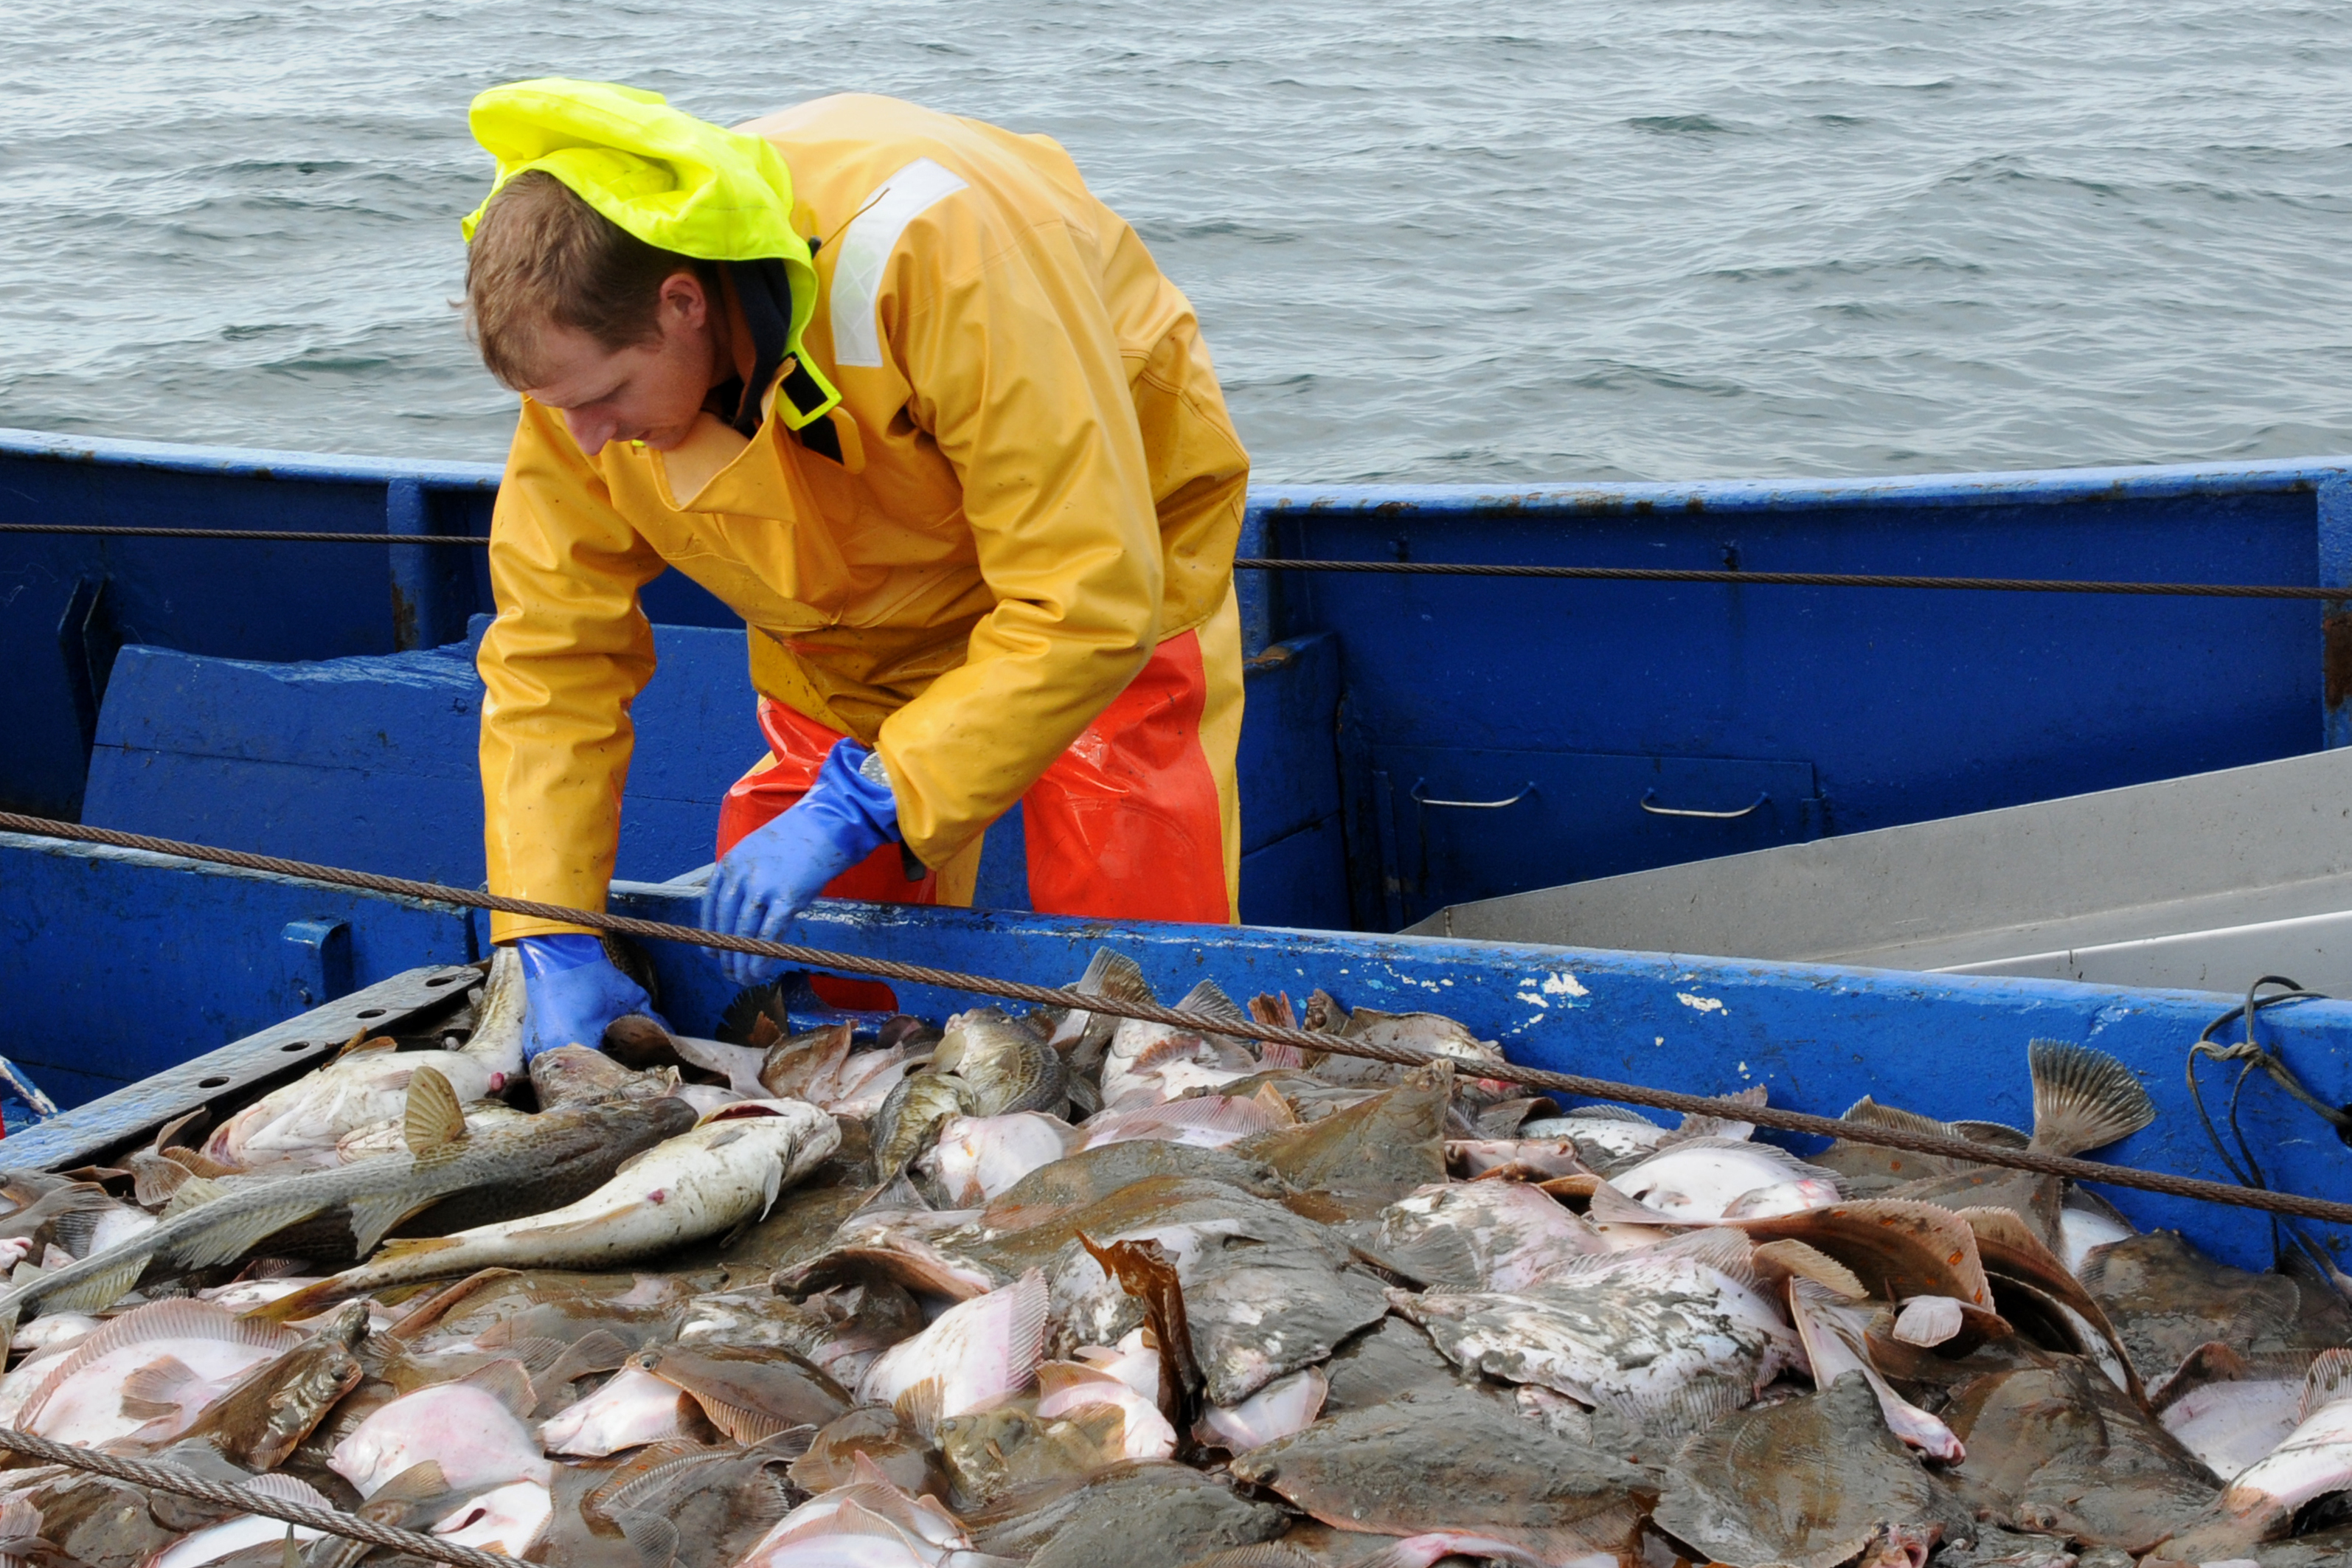 Fischereibiologe Dr. Christoph Petereit sucht an Bord des Kutters Godenwind II nach laichbereiten Fischen für Experimente zur Verteilung von Fischeiern in der Ostsee.